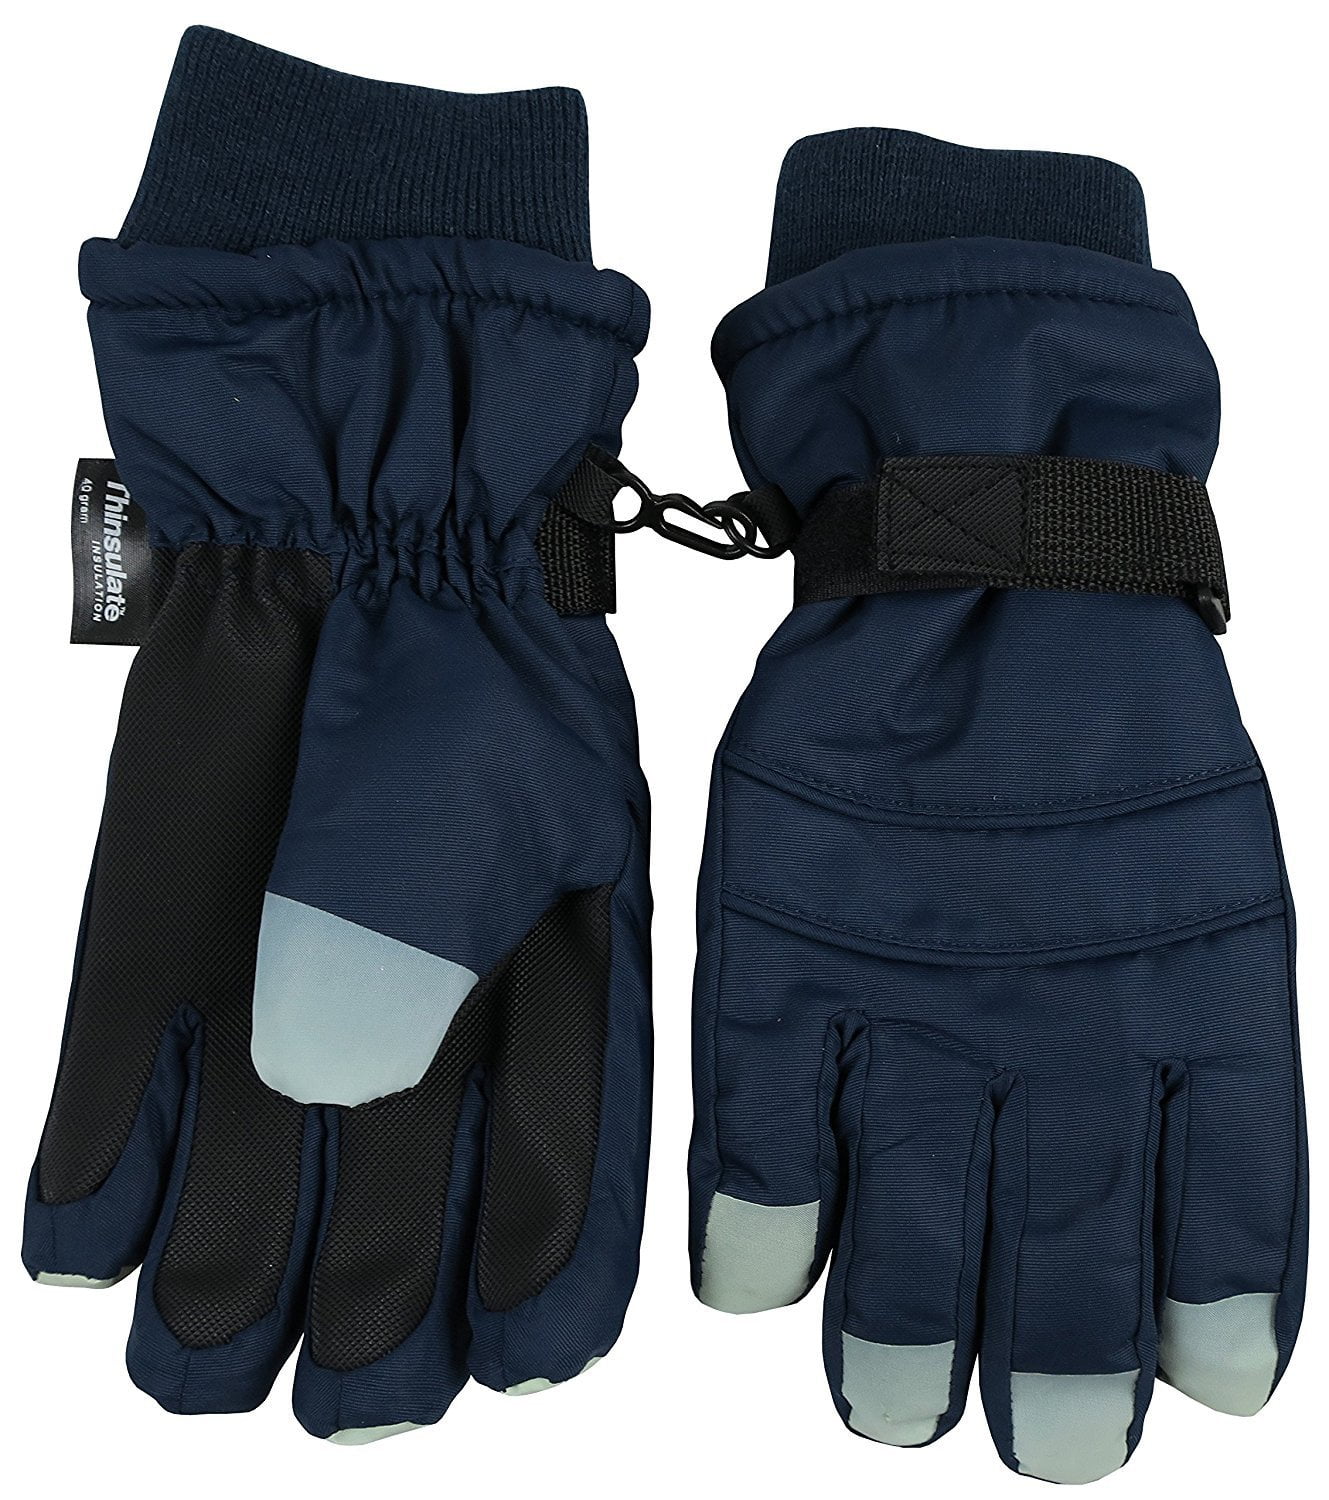 18 month snow gloves